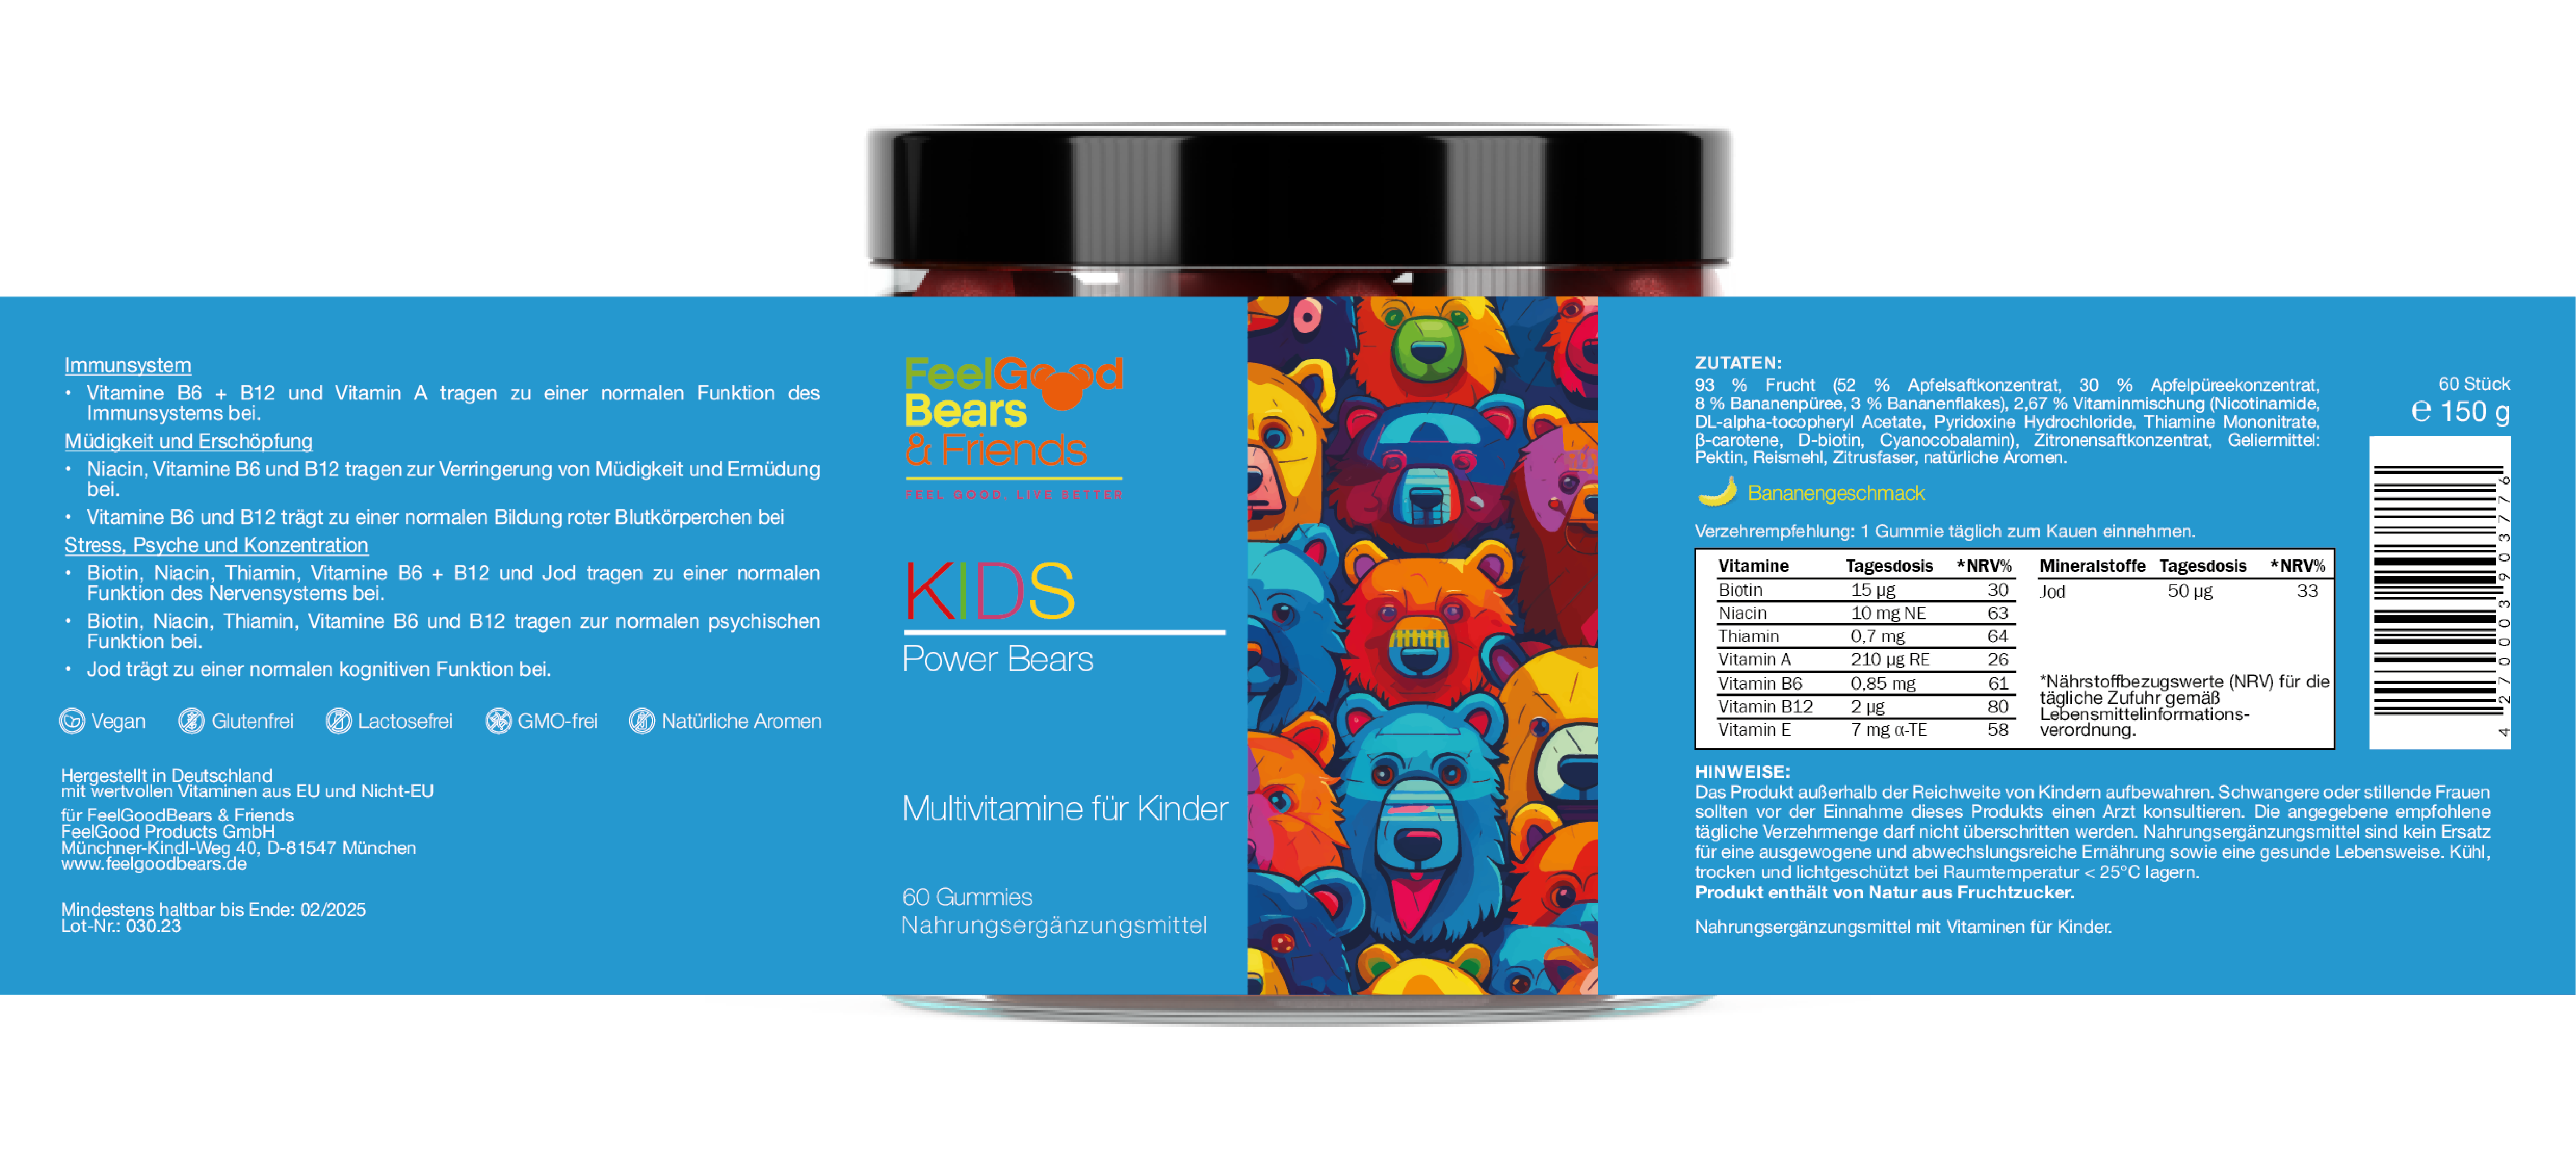 Nahrungsergänzungsmittel als Multivitamin-Gummibärchen für Kinder zur Stärkung des Immunsystems und zur Reduzierung von Müdigkeit. Mit B-Vitaminen, Niacin, Thiamin, Vitamin A und Jod für gesunde Entwicklung, Konzentration und Energie